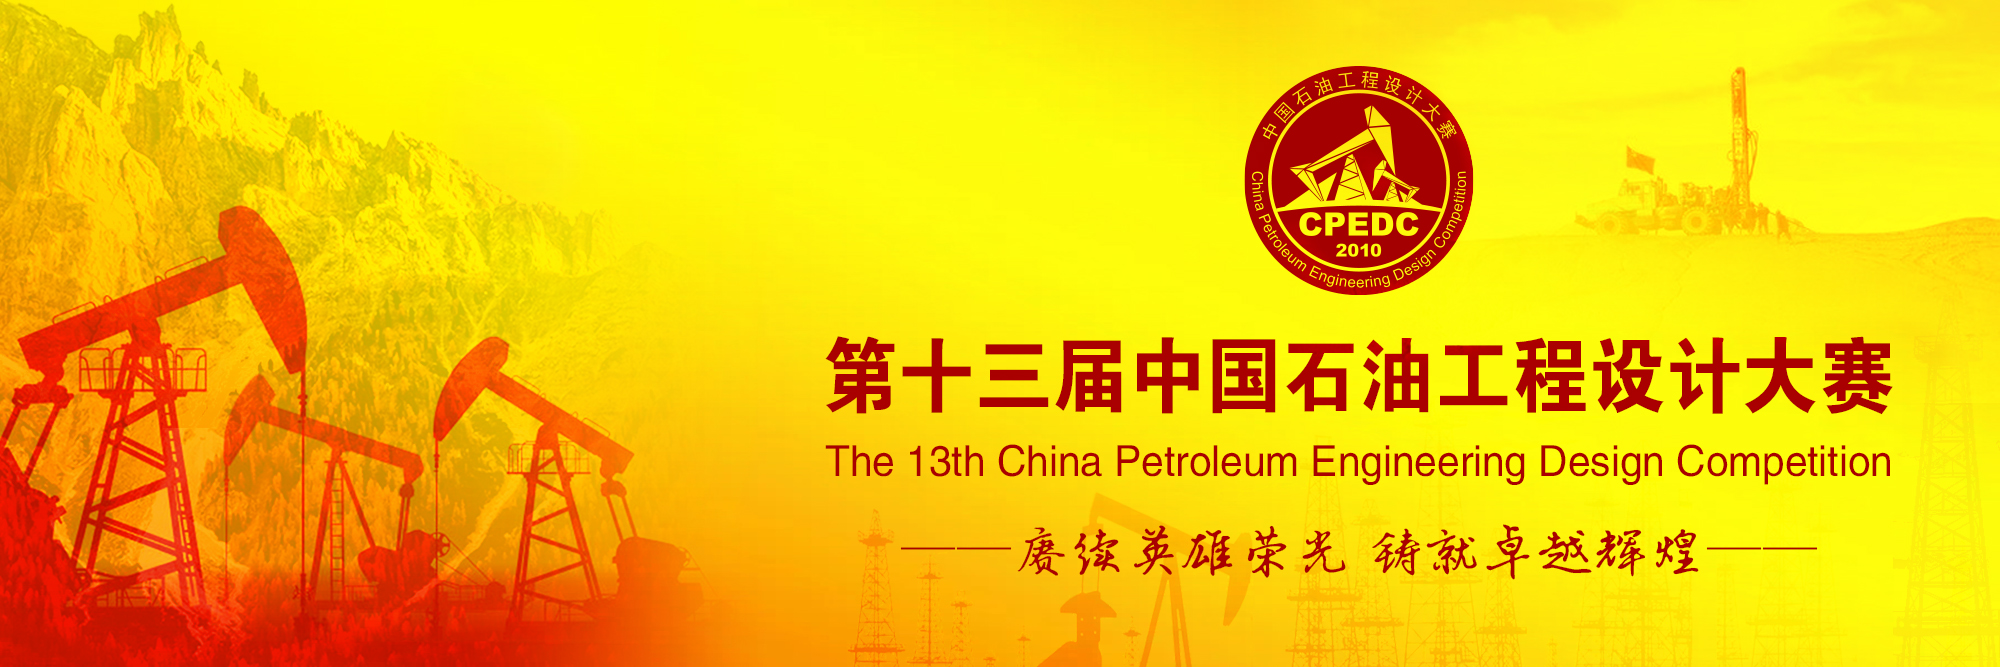 第十三届中国石油工程设计大赛